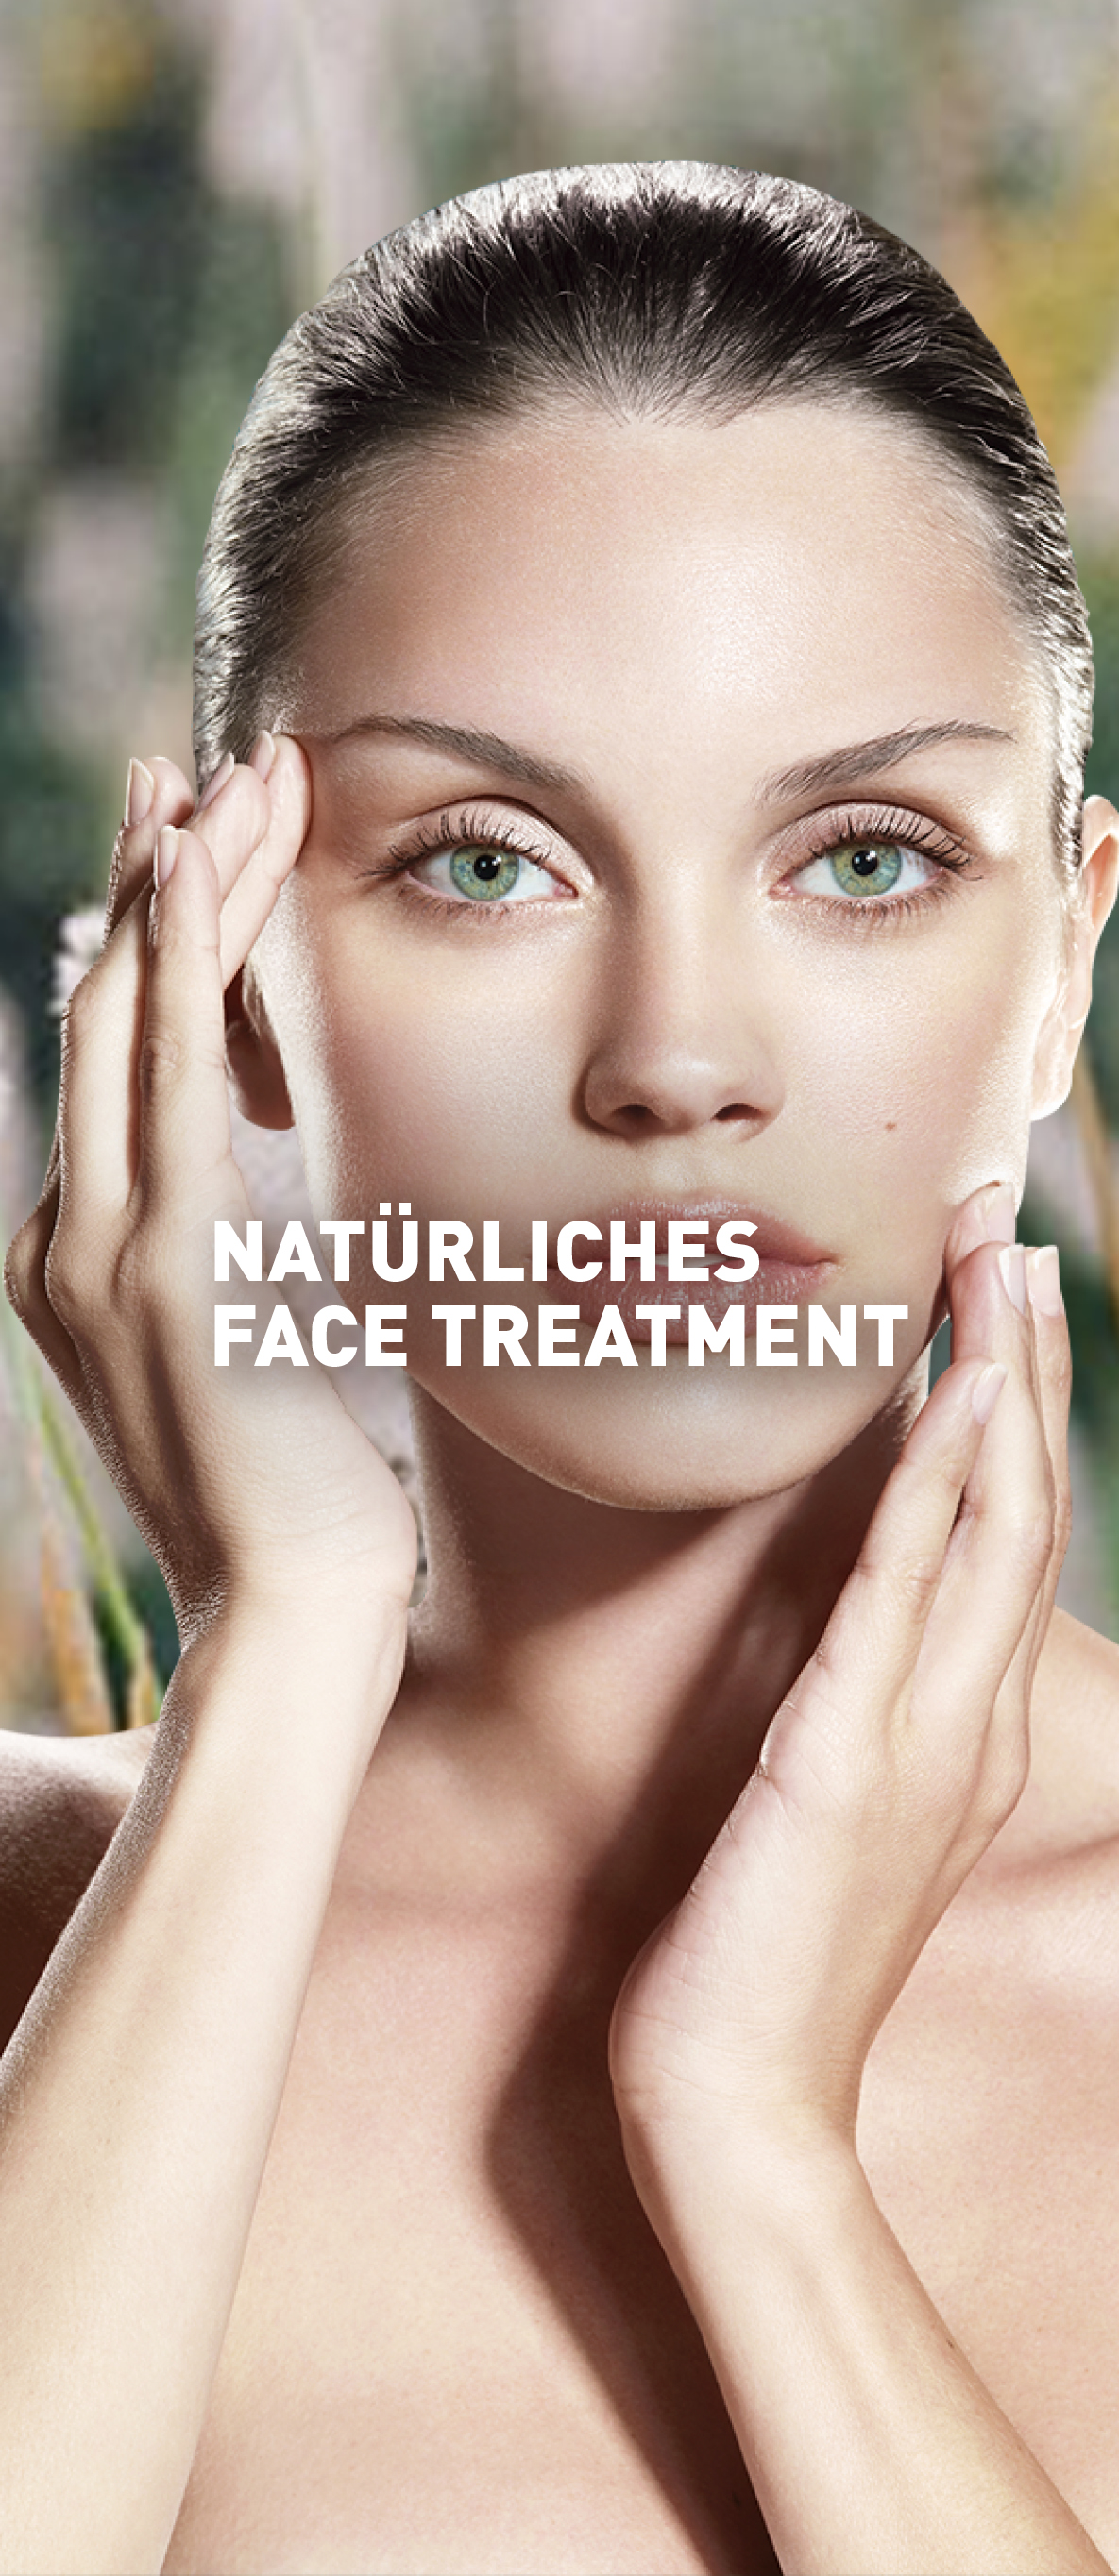 Natürliches Face Treatment